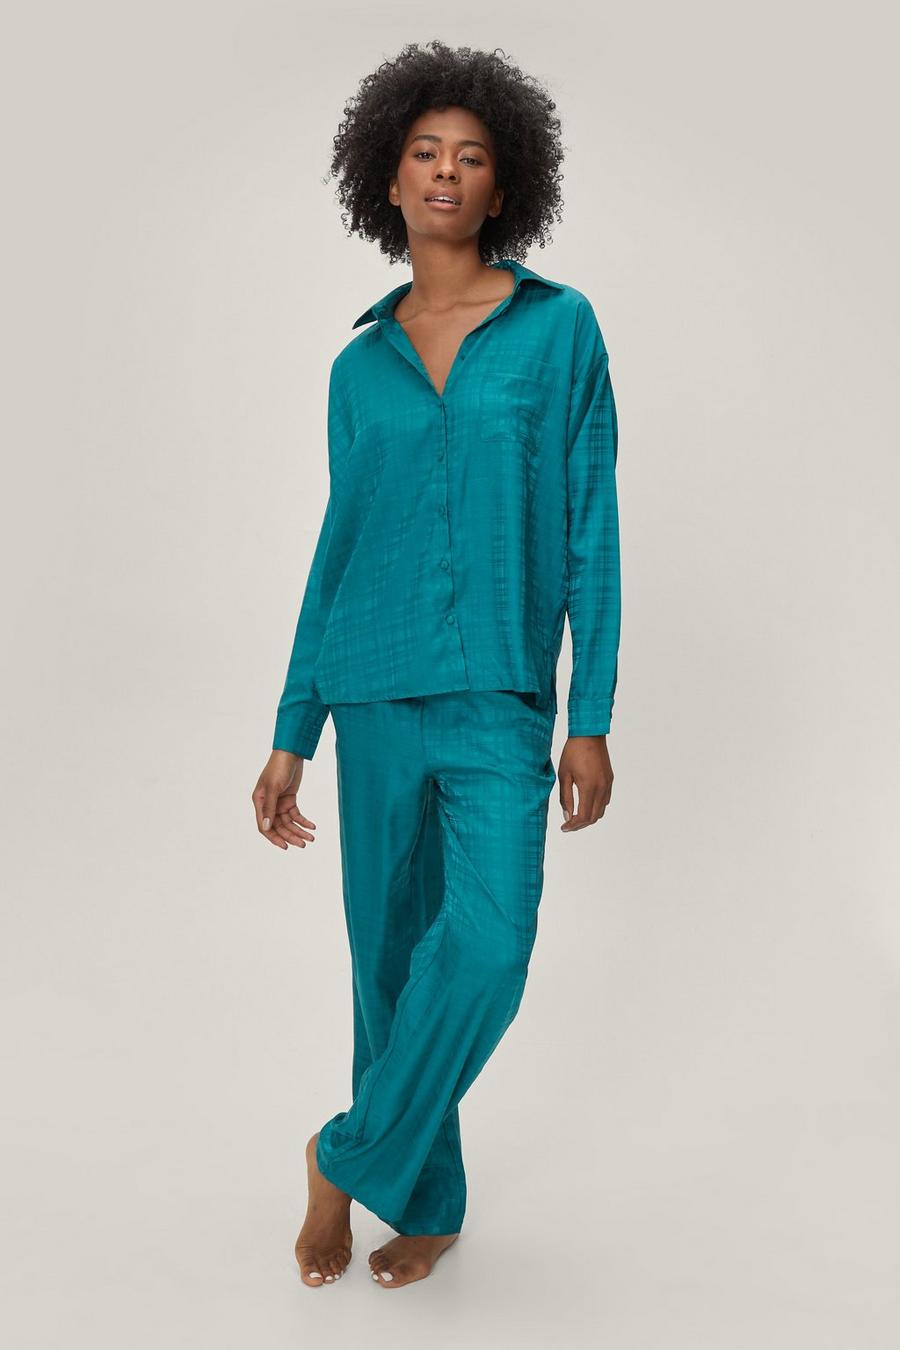 Jacquard Check Oversized Pajama Shirt and Pants Set